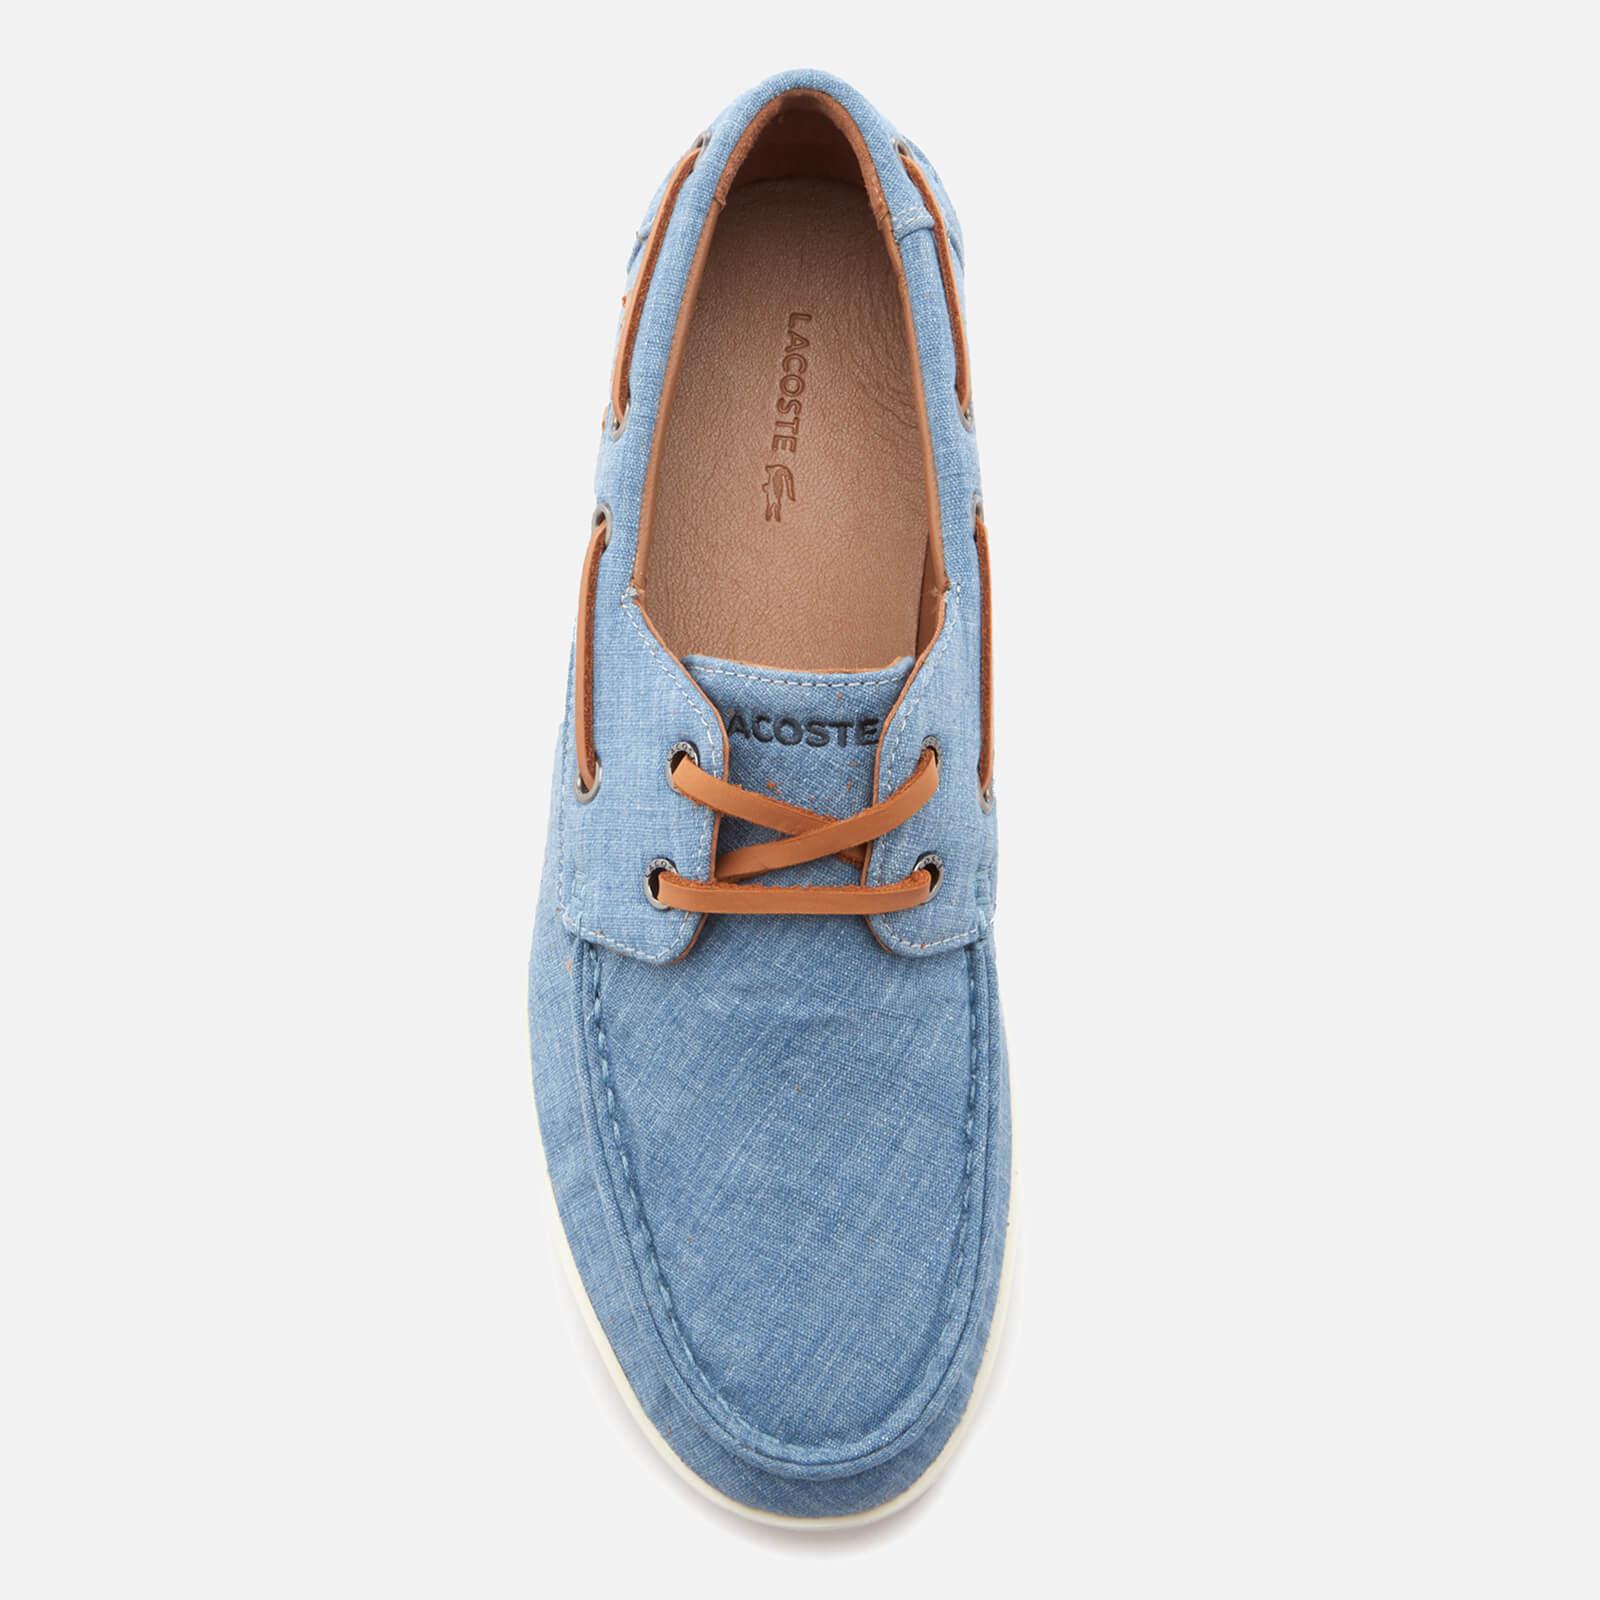 Lacoste Keellson Boat Shoes in Blue for Men - Lyst